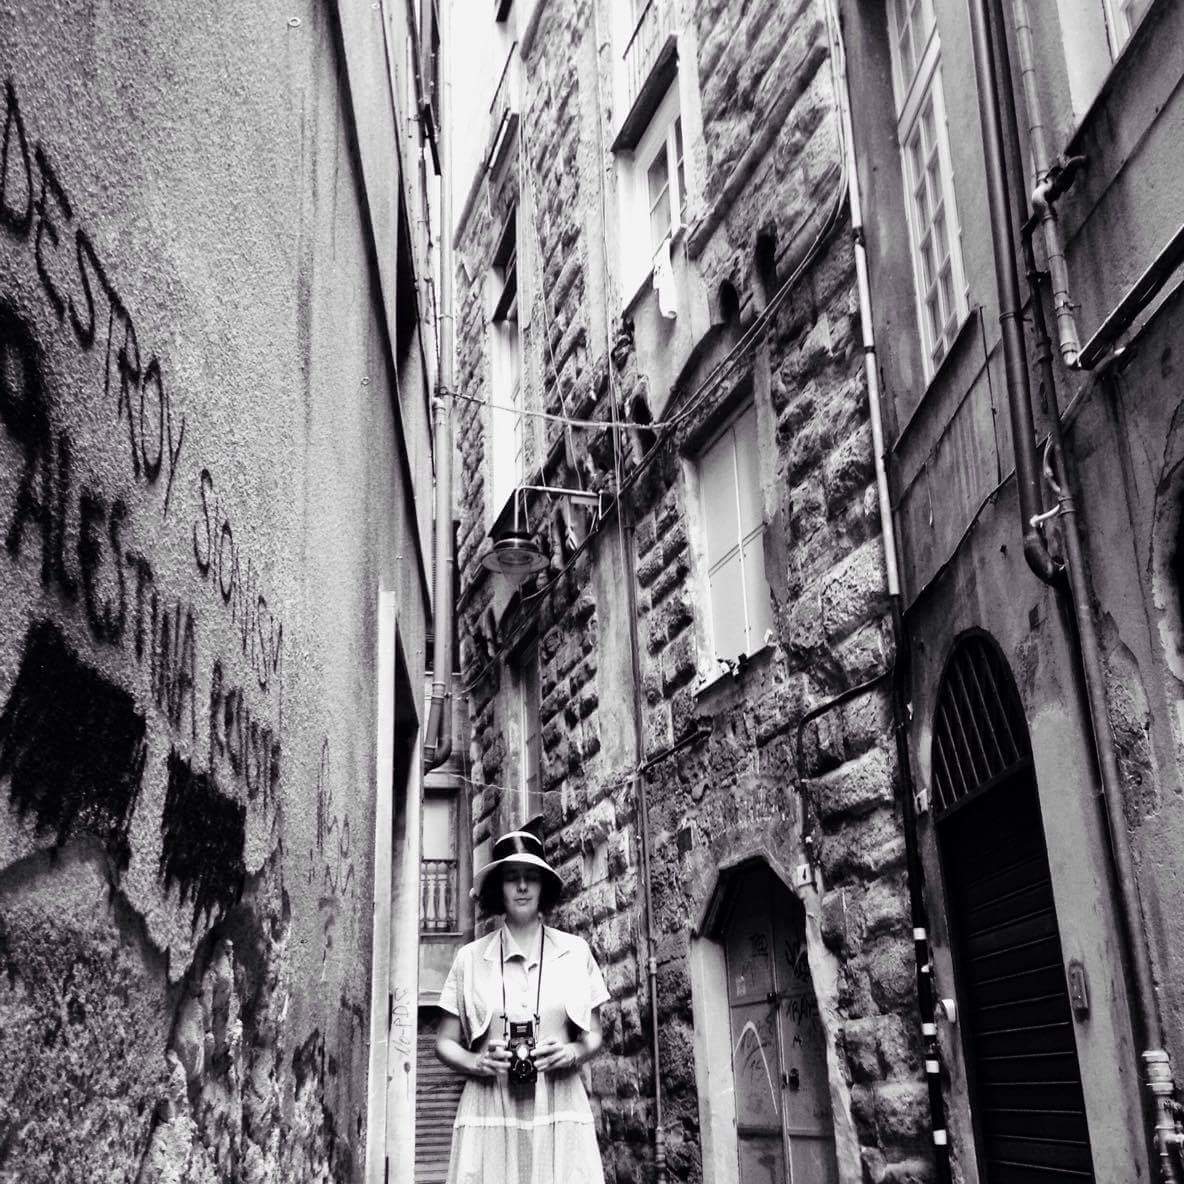 Daniela Carucci nei panni di Vivian Maier, per i vicoli del centro storico di Genova (foto di Paola Pietronave)